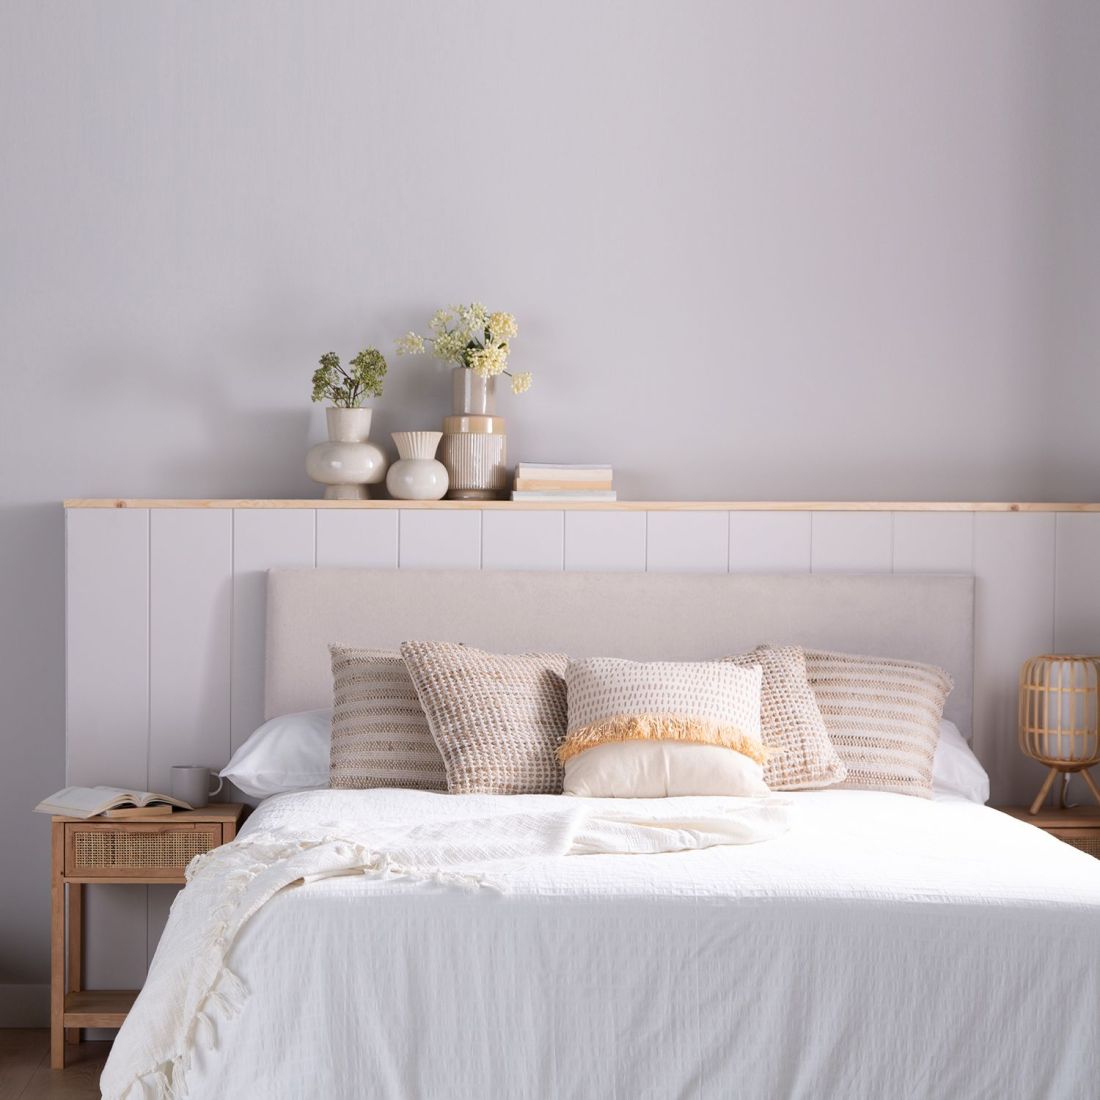 Cabecero personalizable All Medidas cabeceros Para cama de 150 cm Colores  tapizados Nido 5 beige